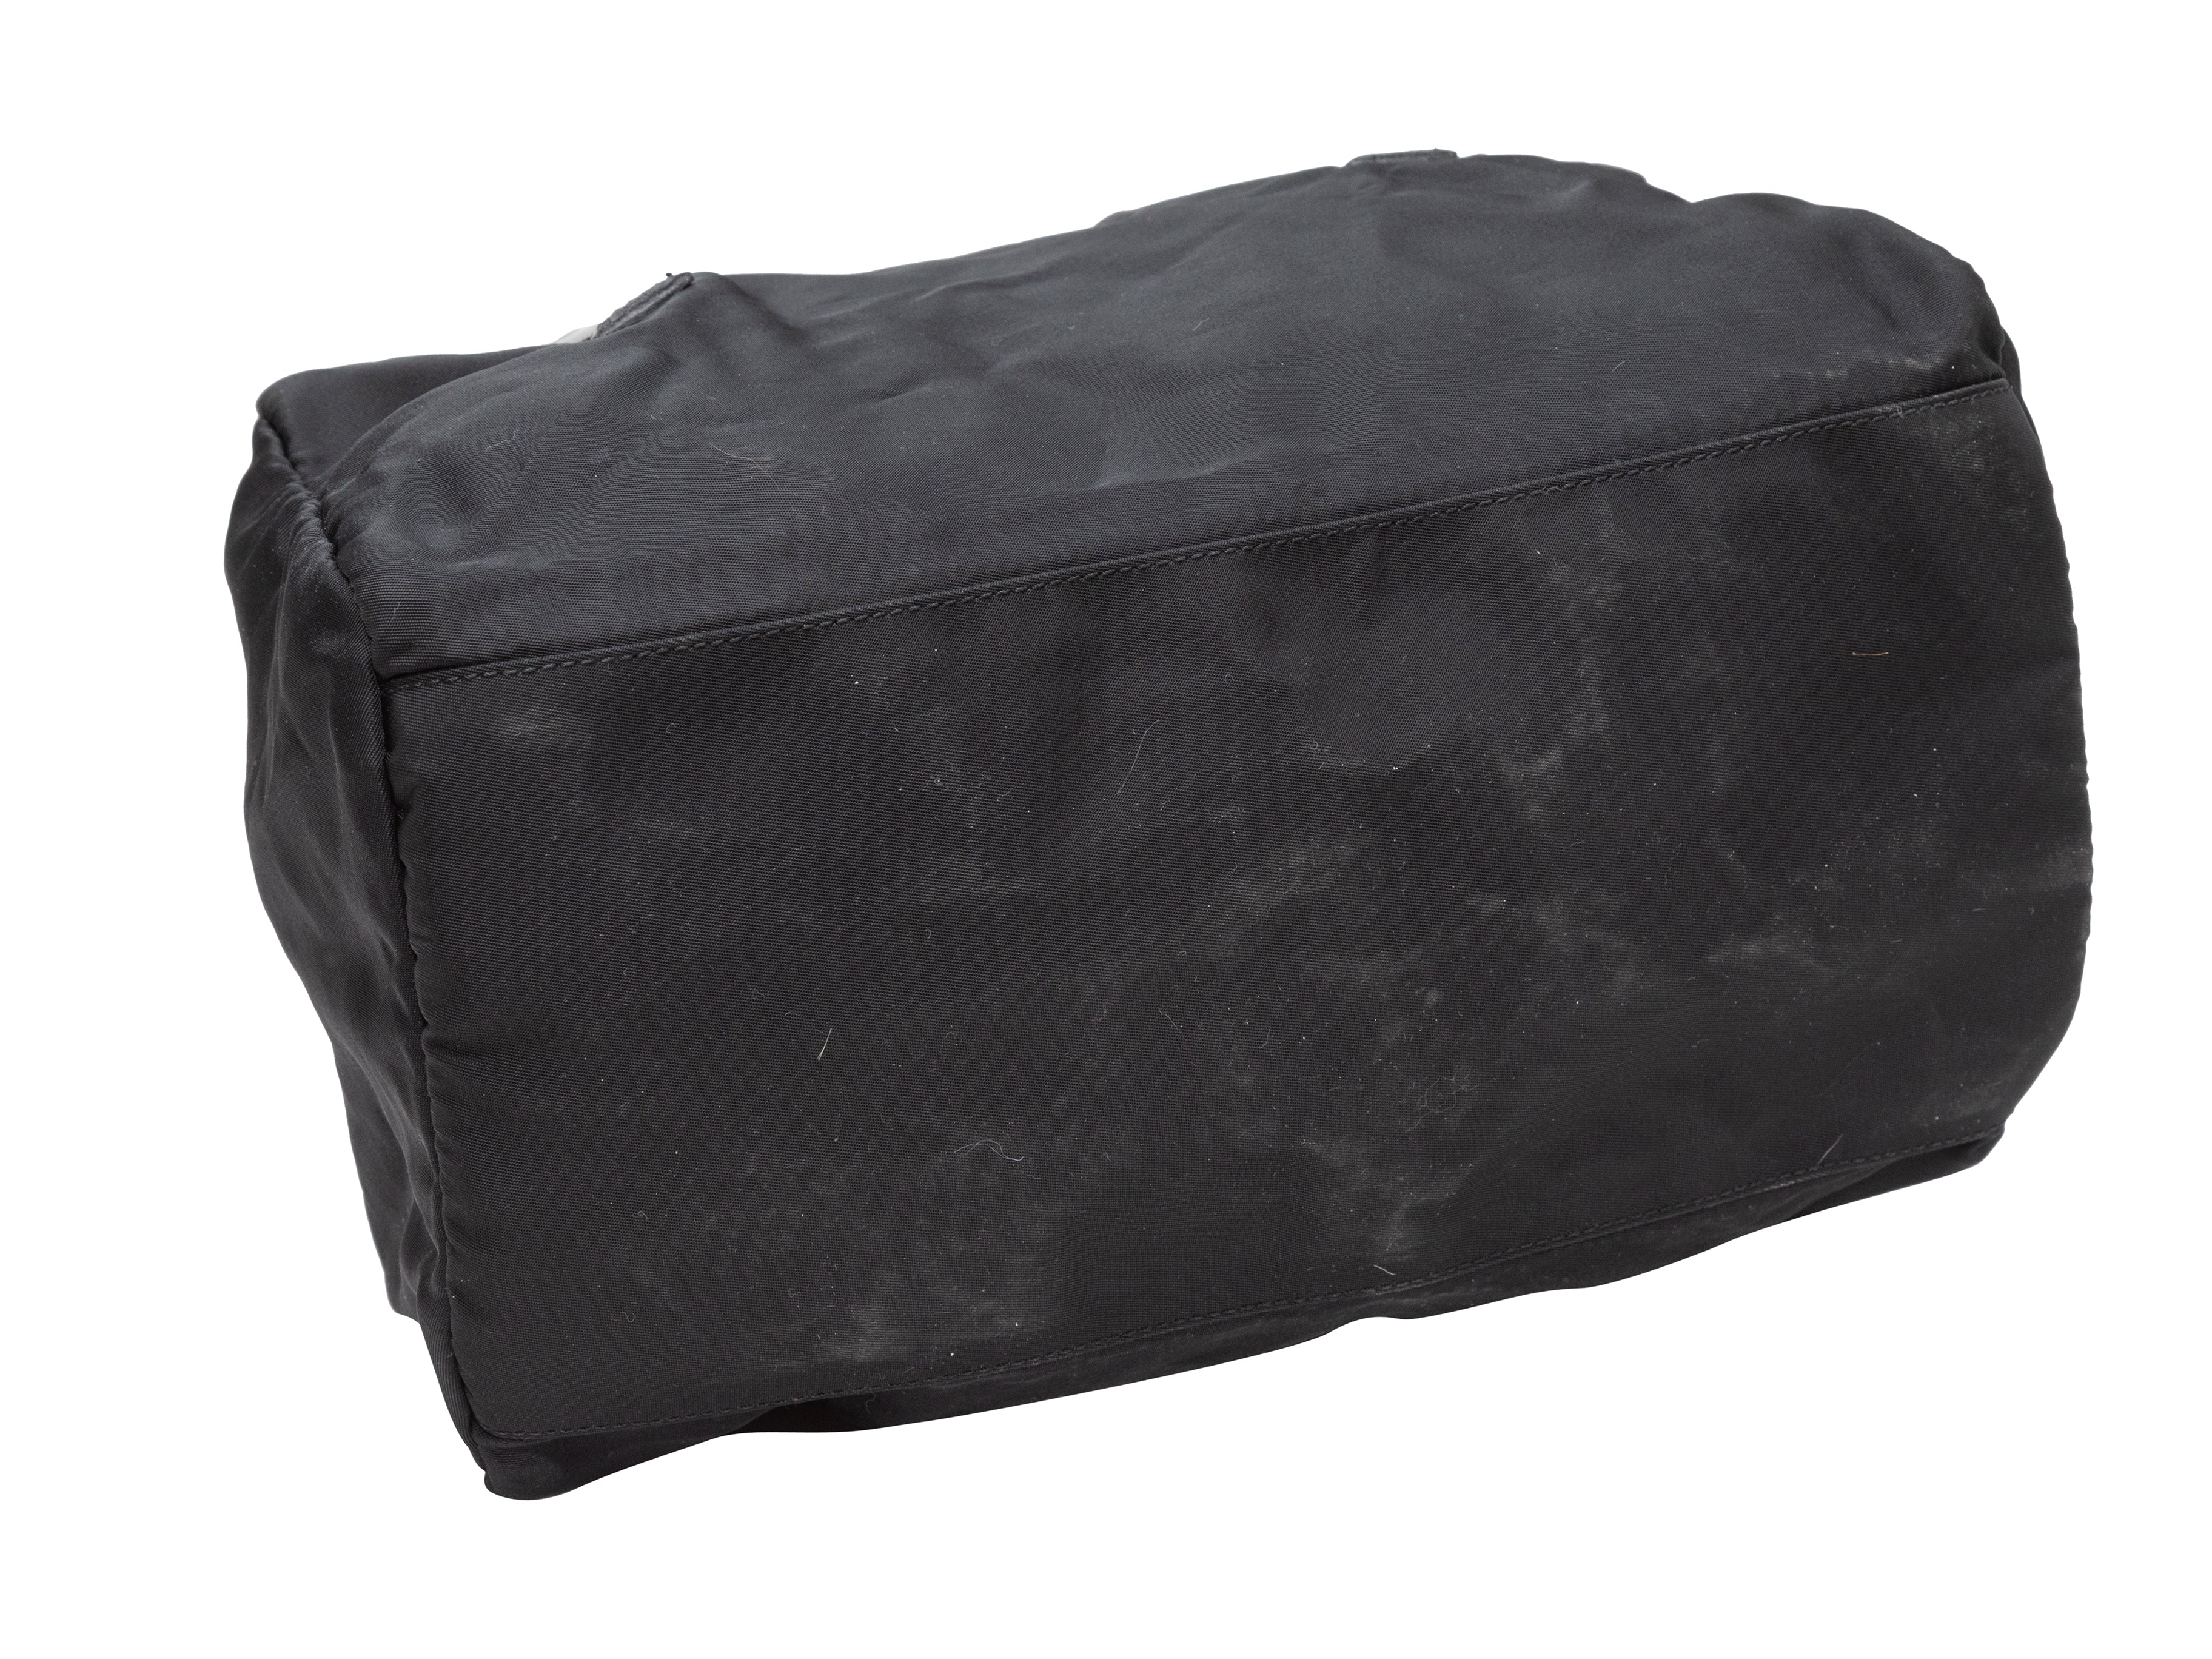 Black Prada Nylon Top Handle Bag – Designer Revival